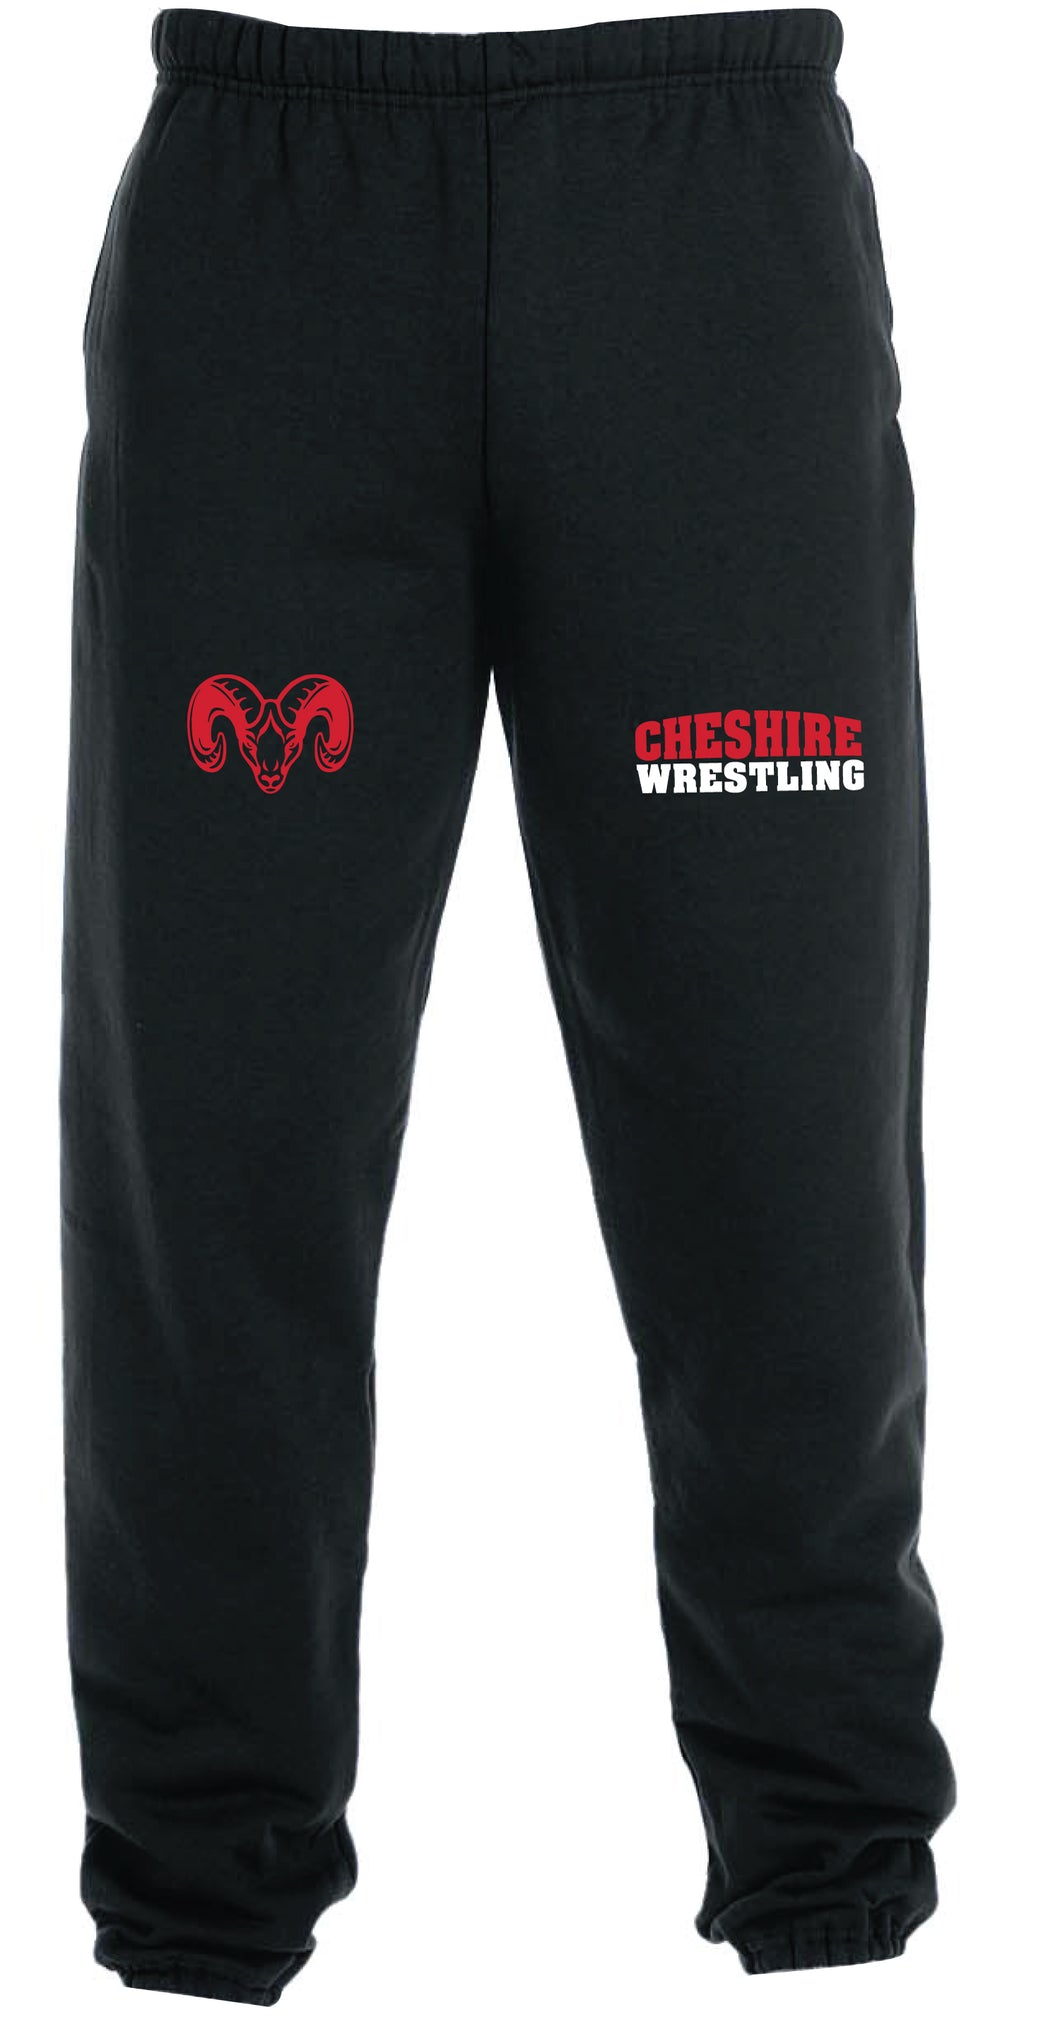 Cheshire Rams Cotton Sweatpants - Black - 5KounT